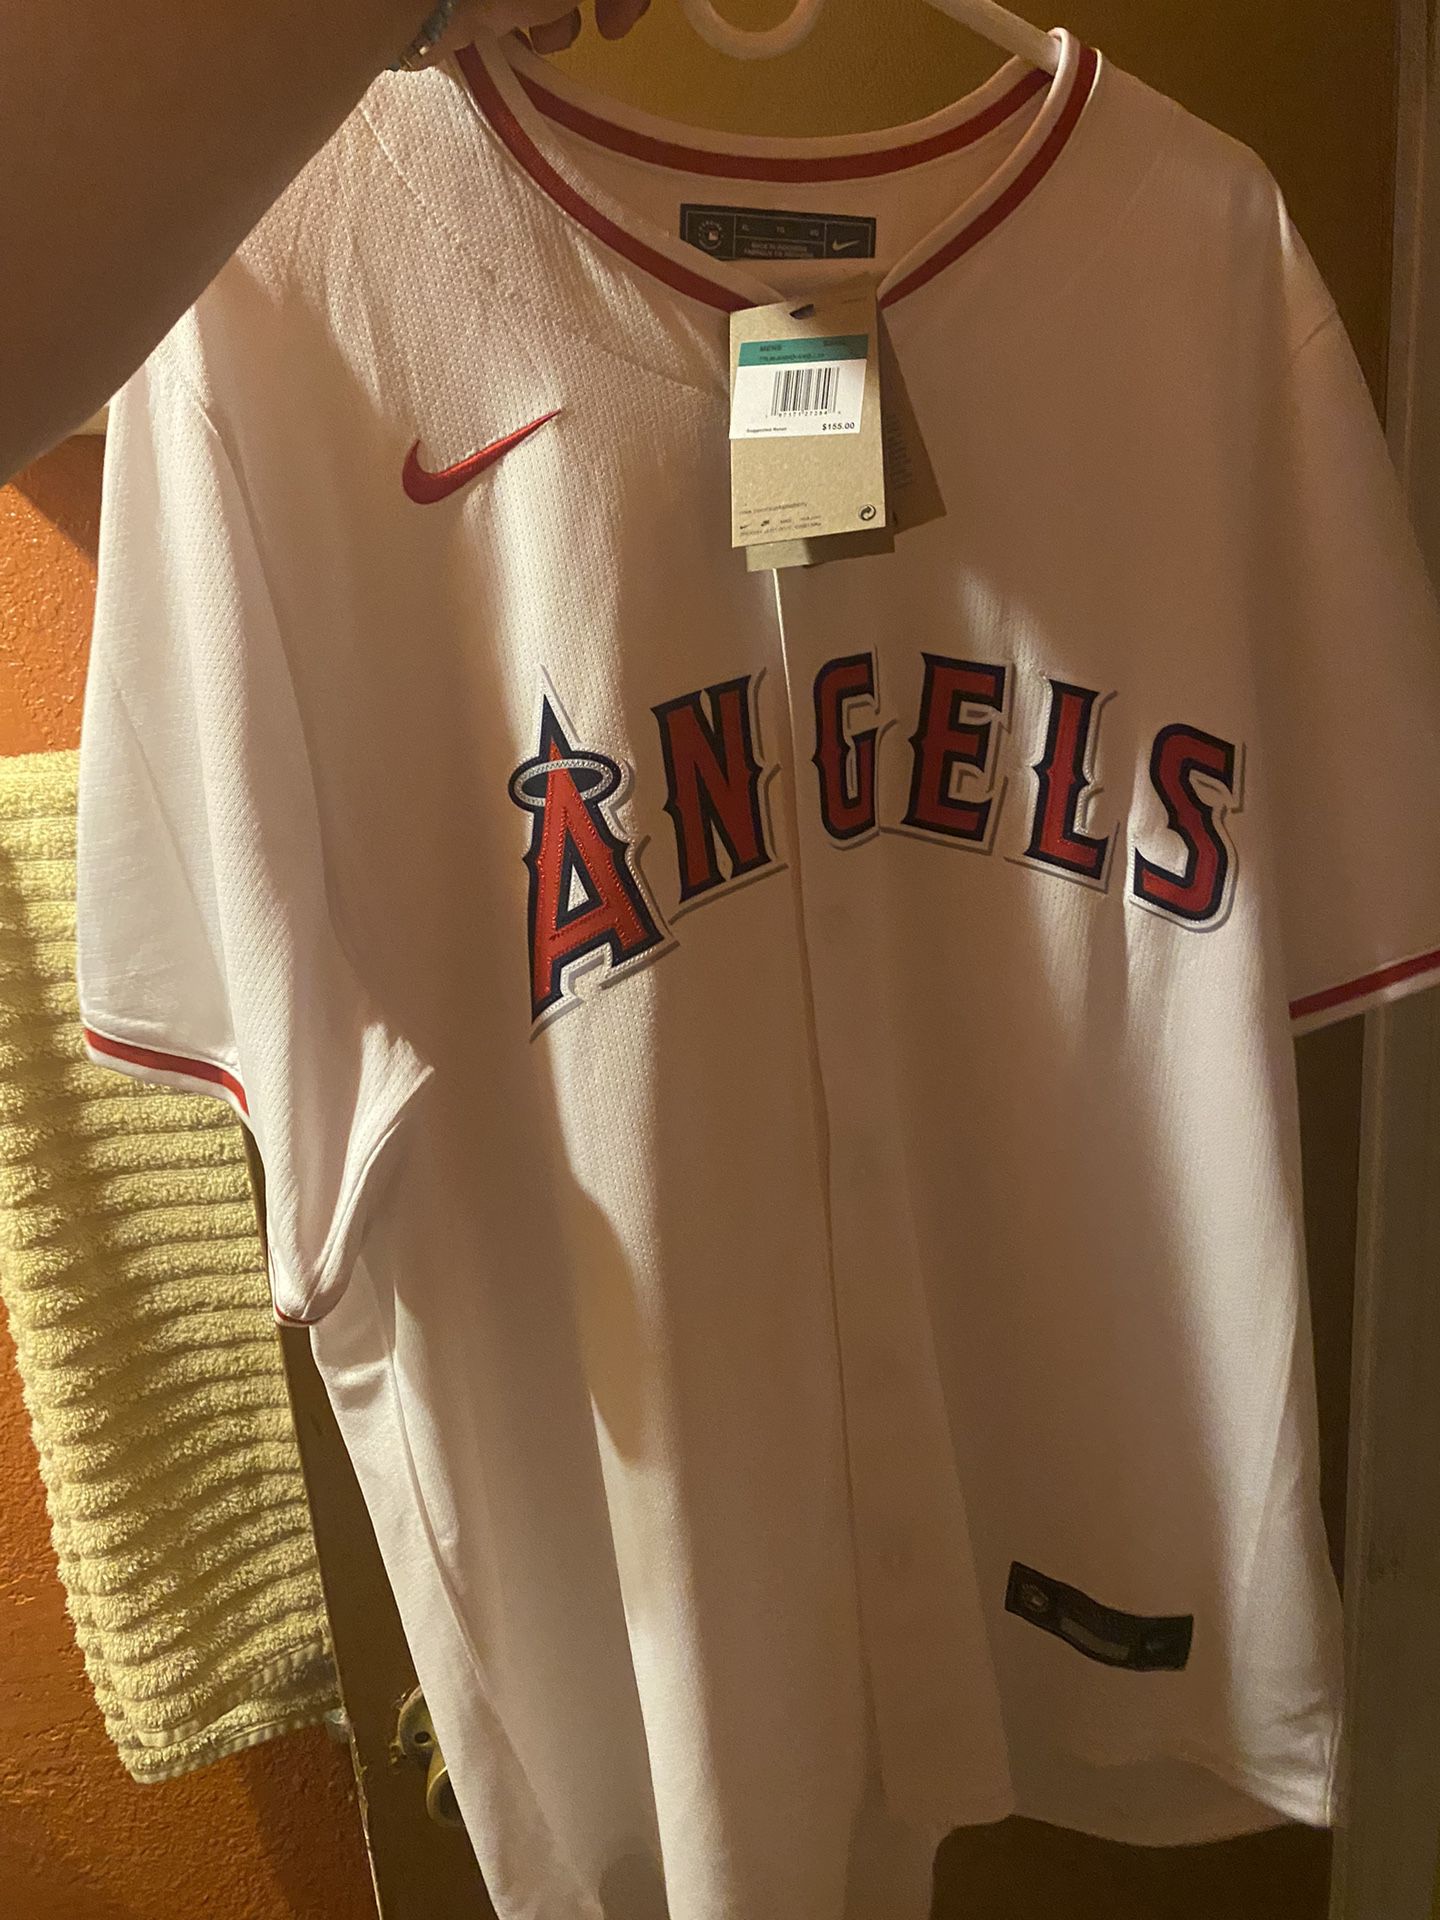 Angels Baseball Jersey Size Xl 